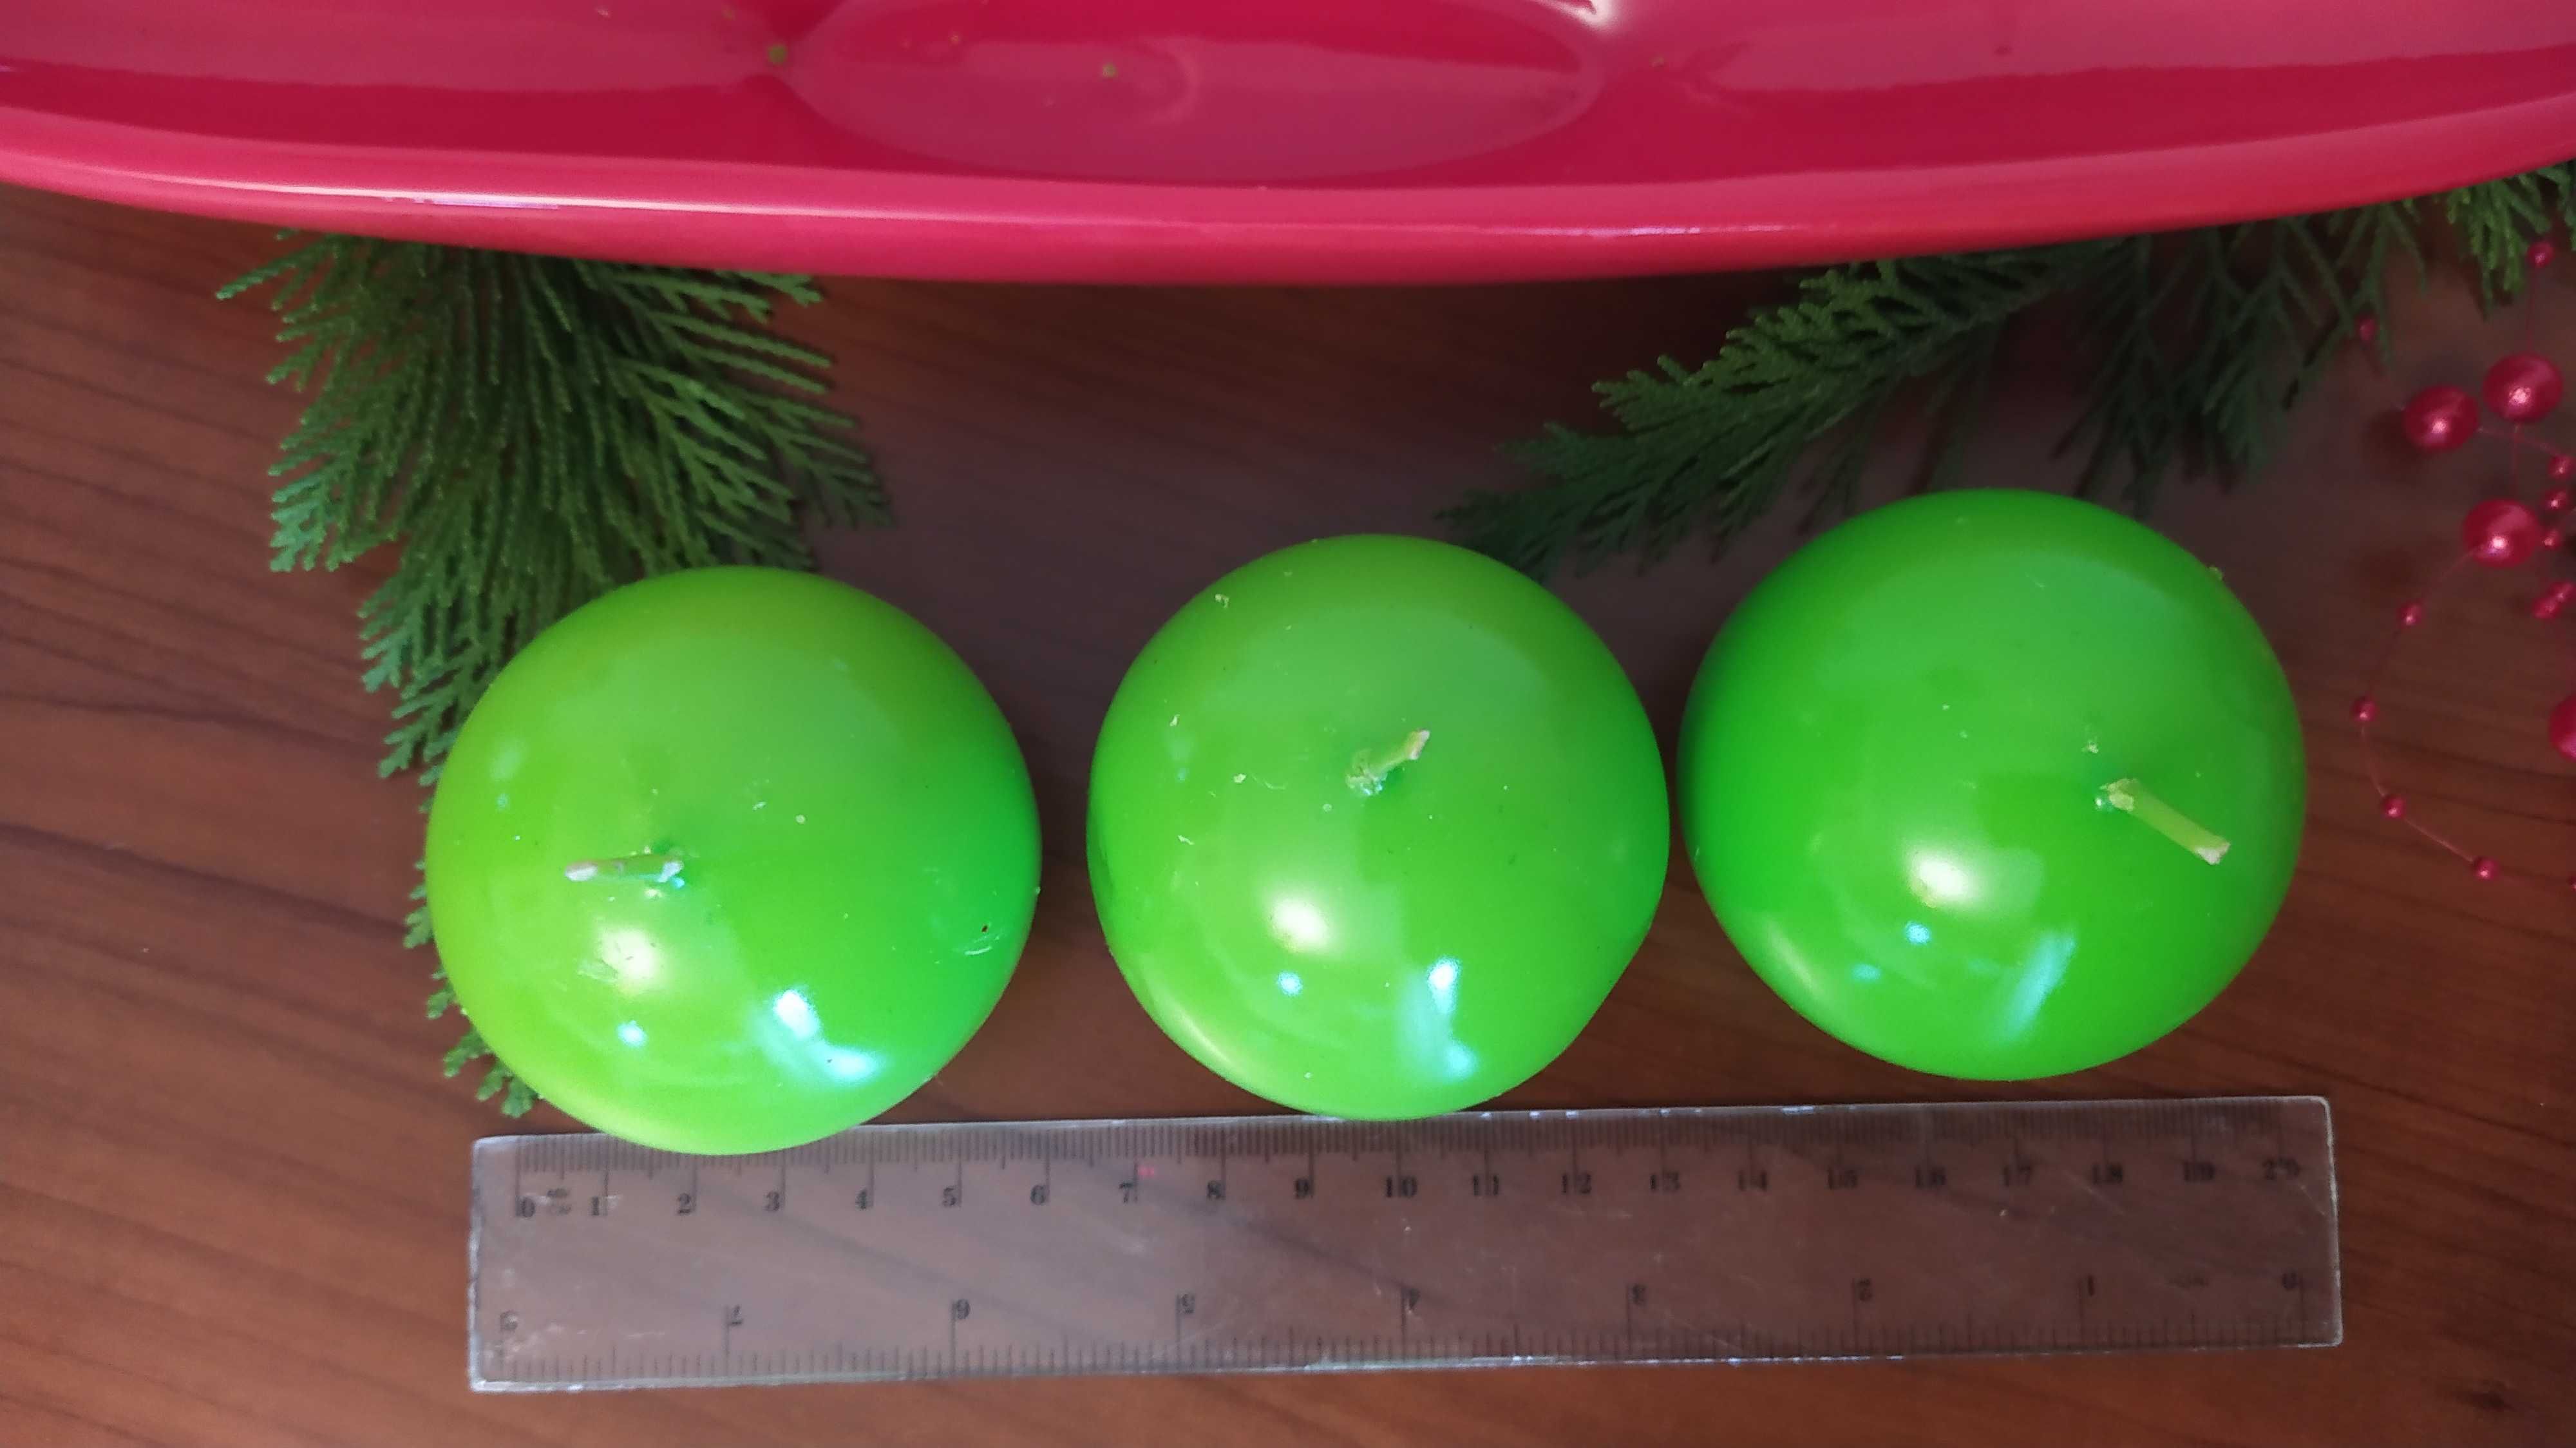 3 kule  świeczki  w ceramicznej łódce